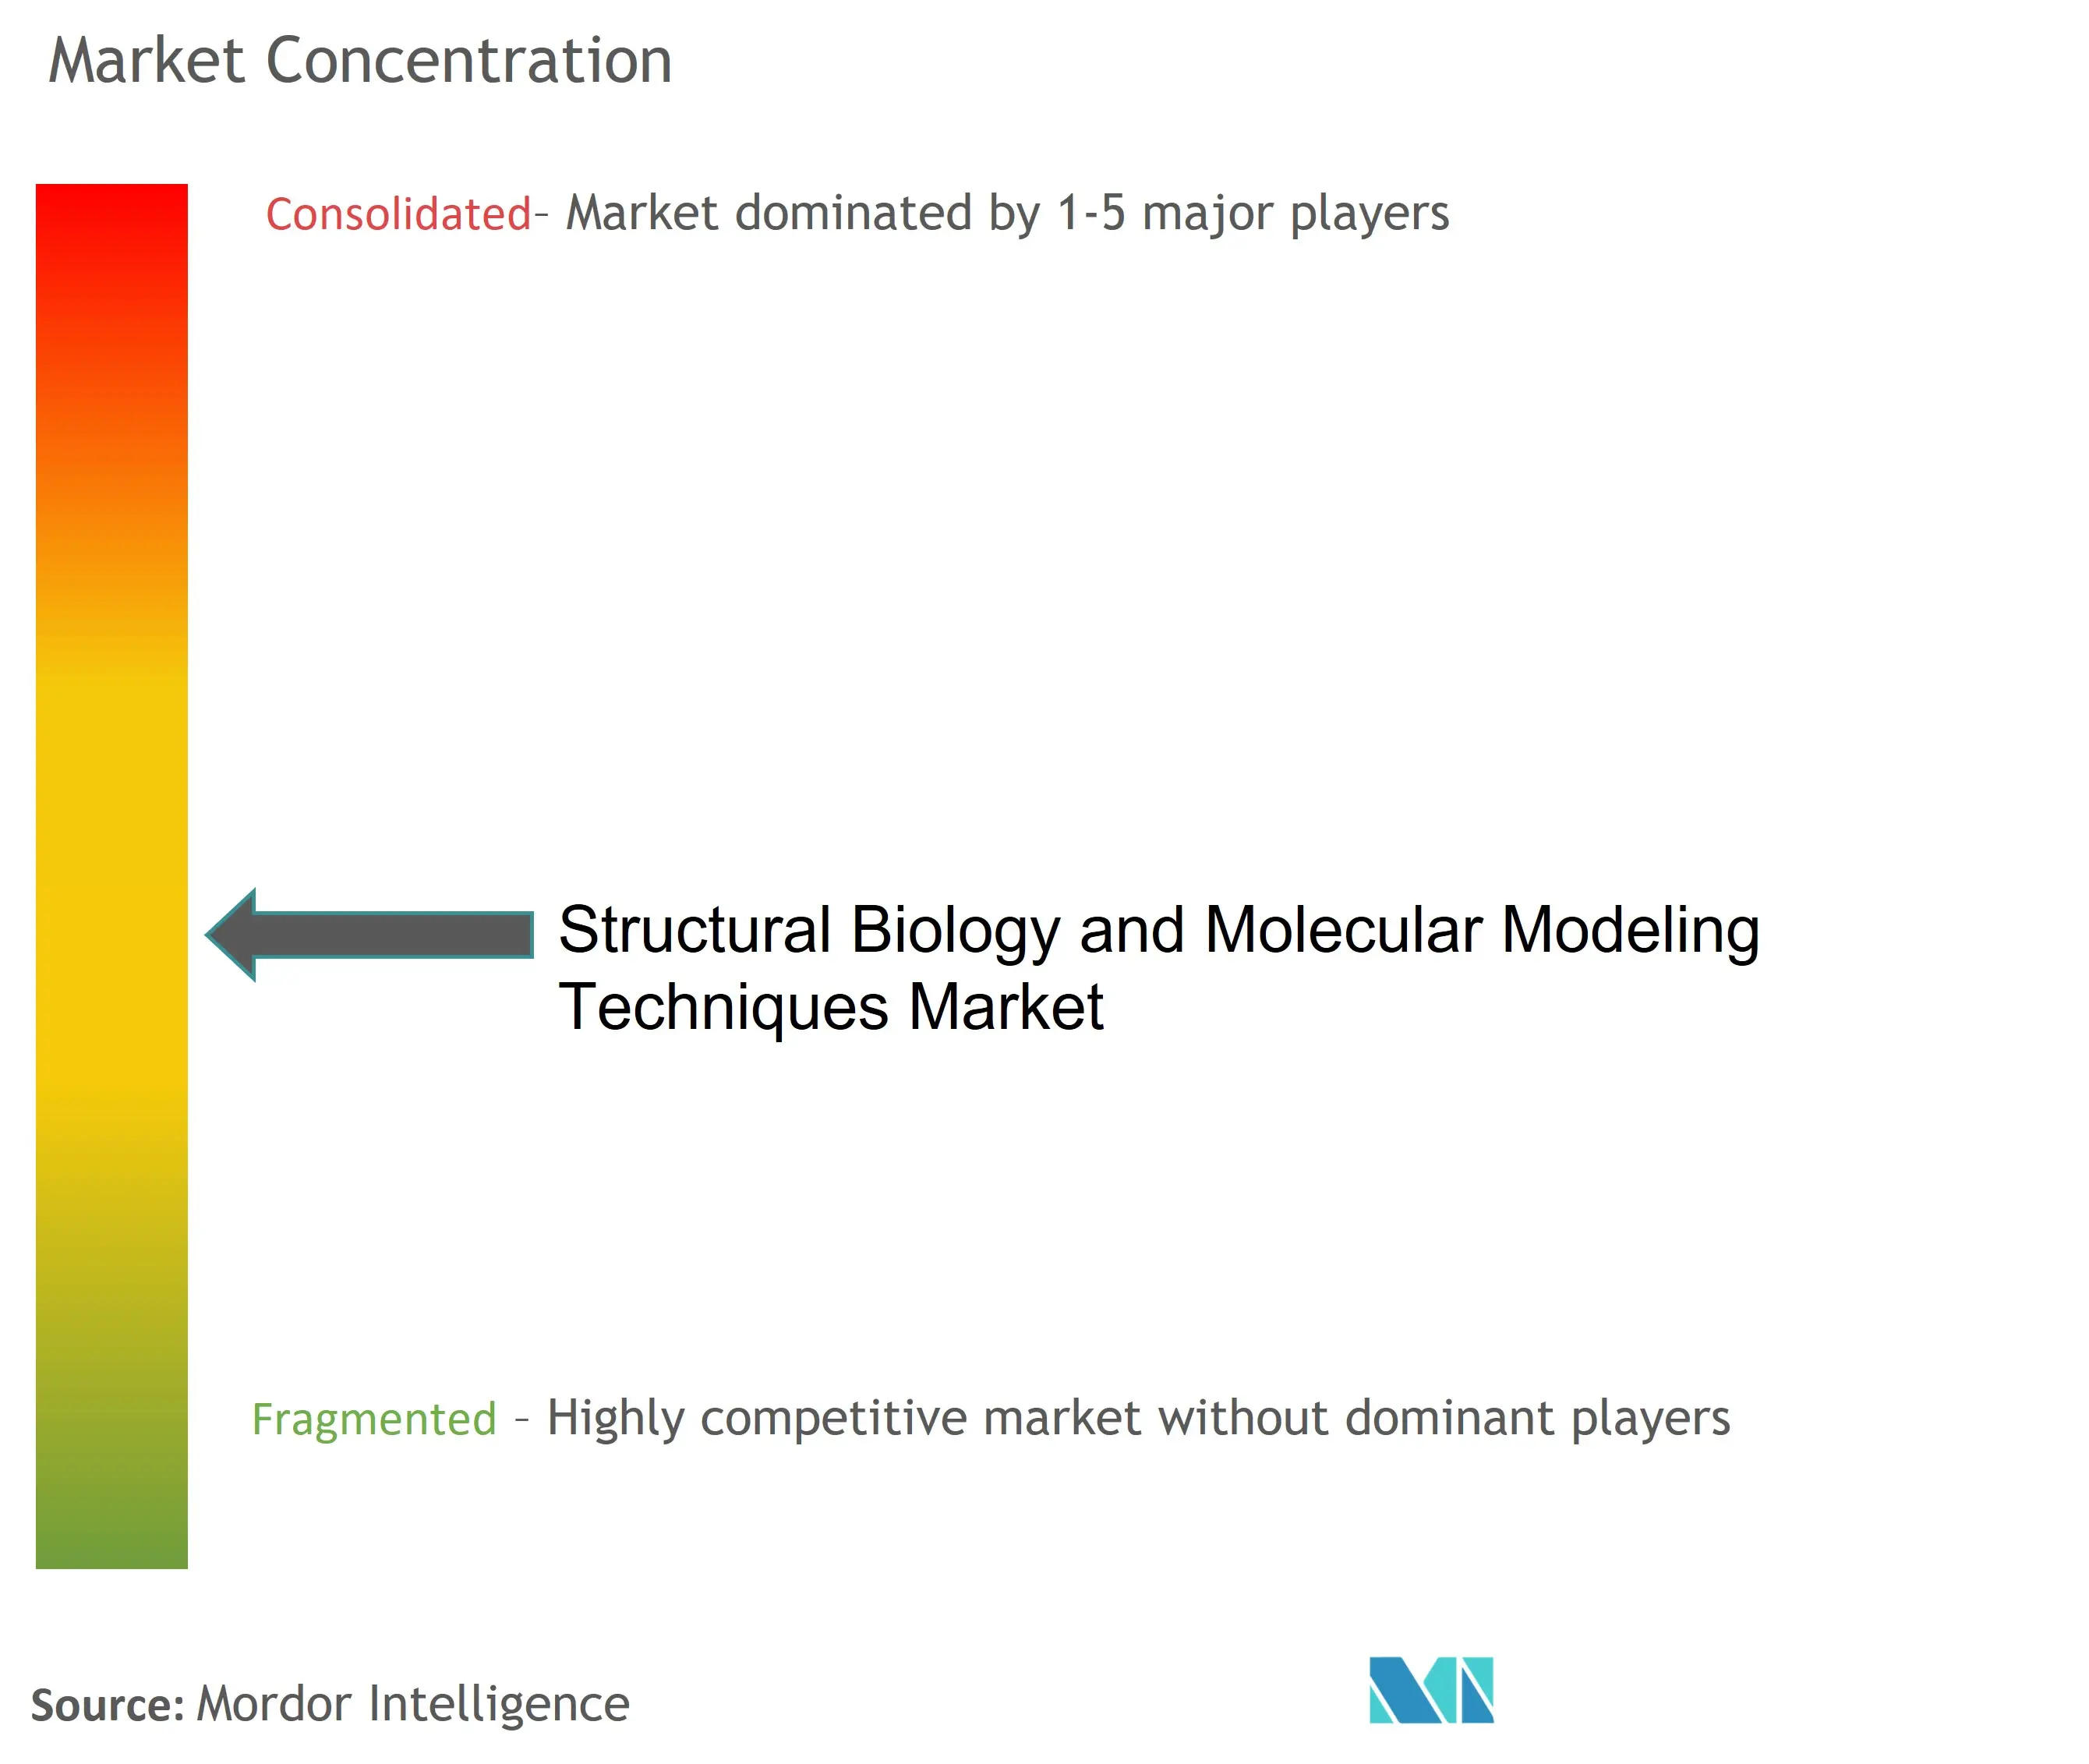 Biología estructural y técnicas de modelado molecularConcentración del Mercado